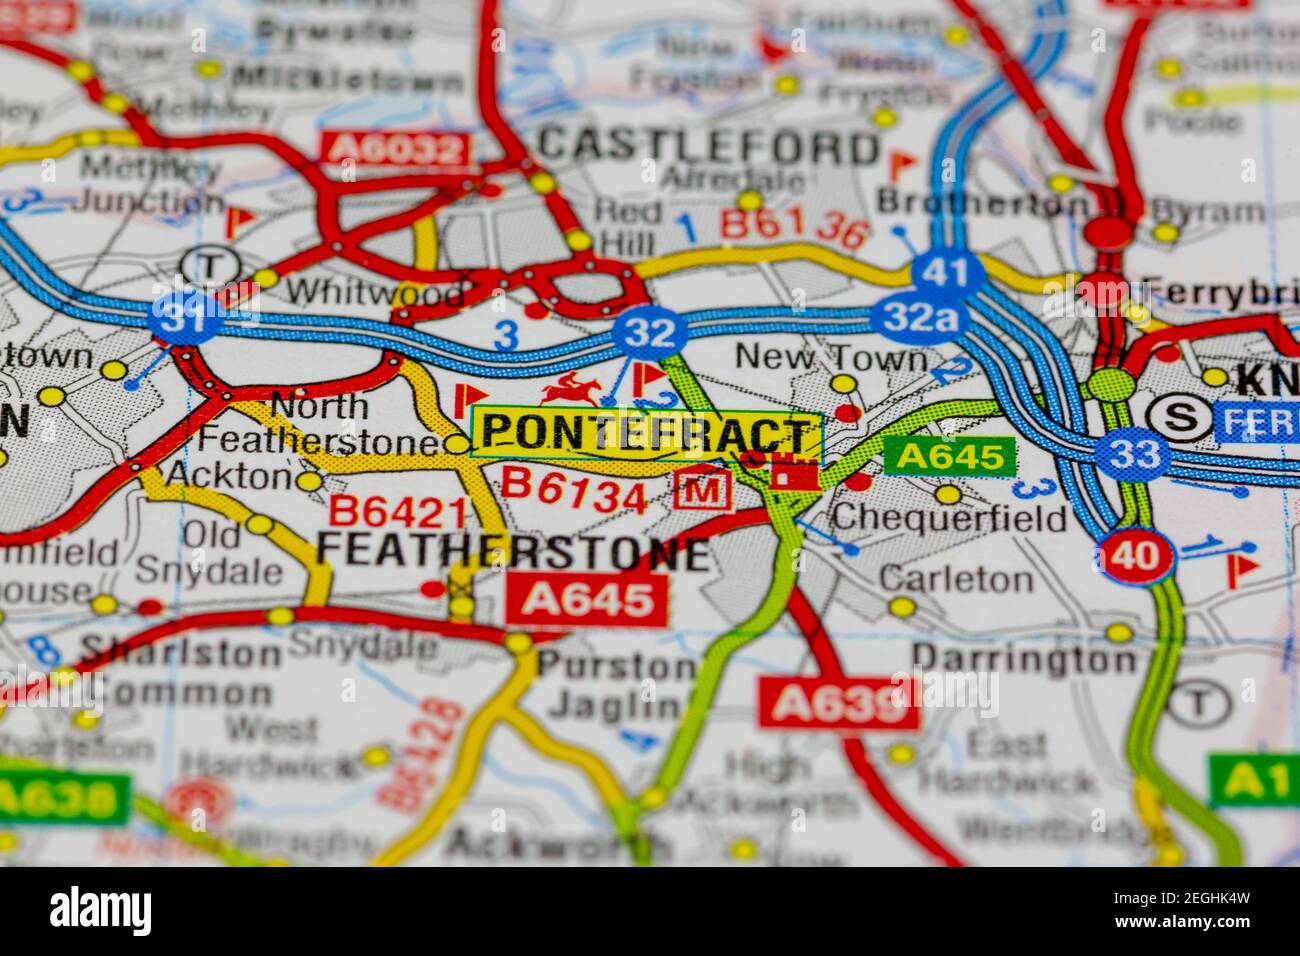 Pontefract e le aree circostanti mostrate su una mappa stradale o. mappa geografica Foto Stock